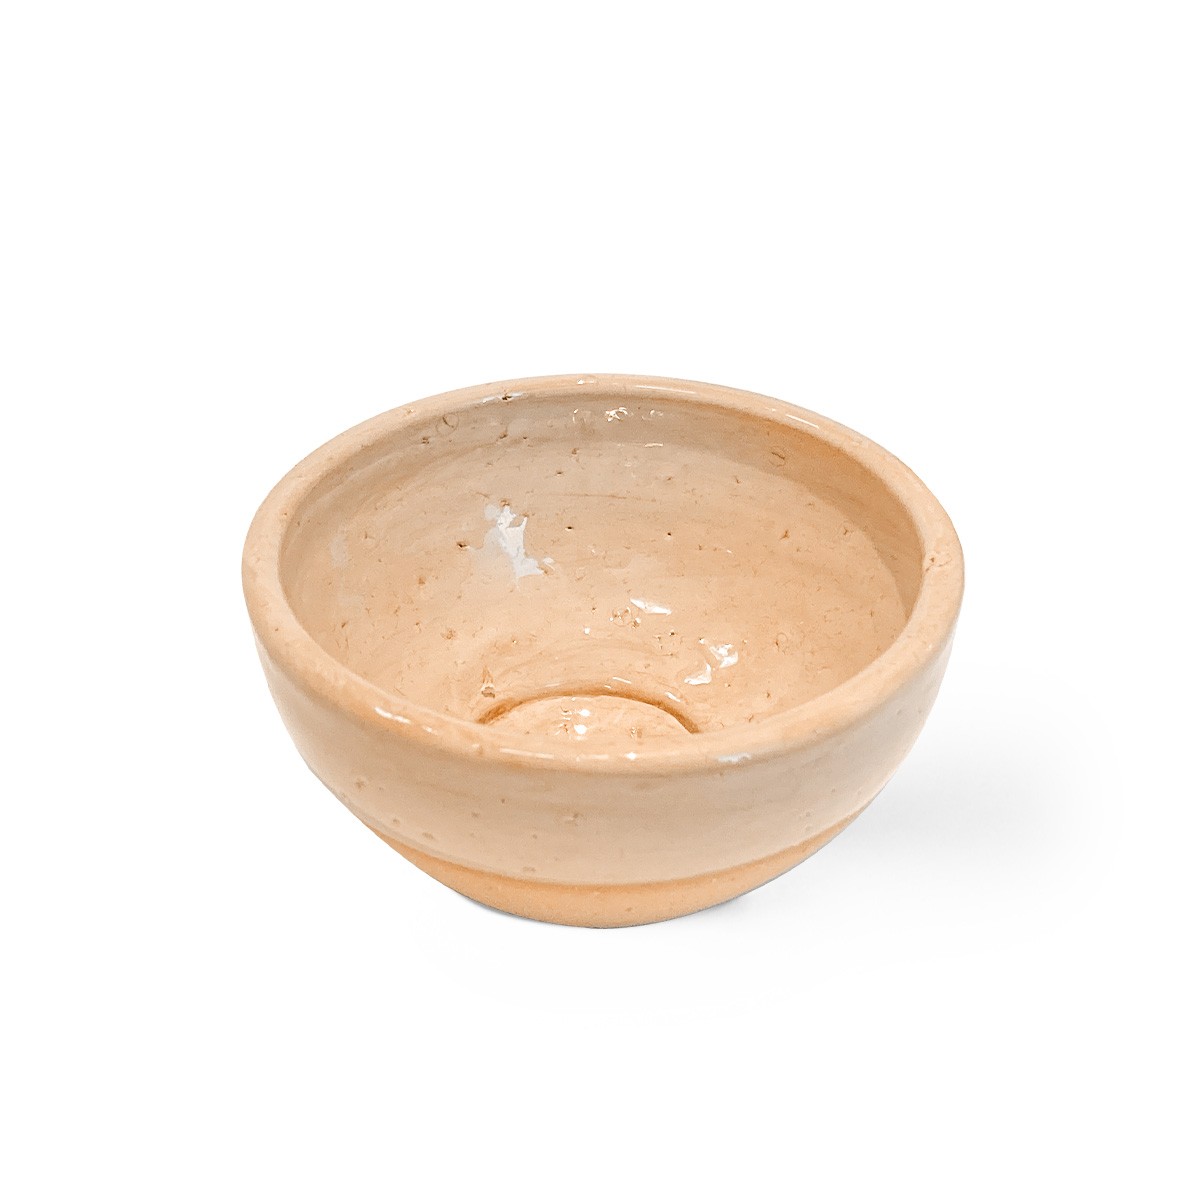  Kit Argilas + Esfoliante de Carnaúba + Bowl de Cerâmica 